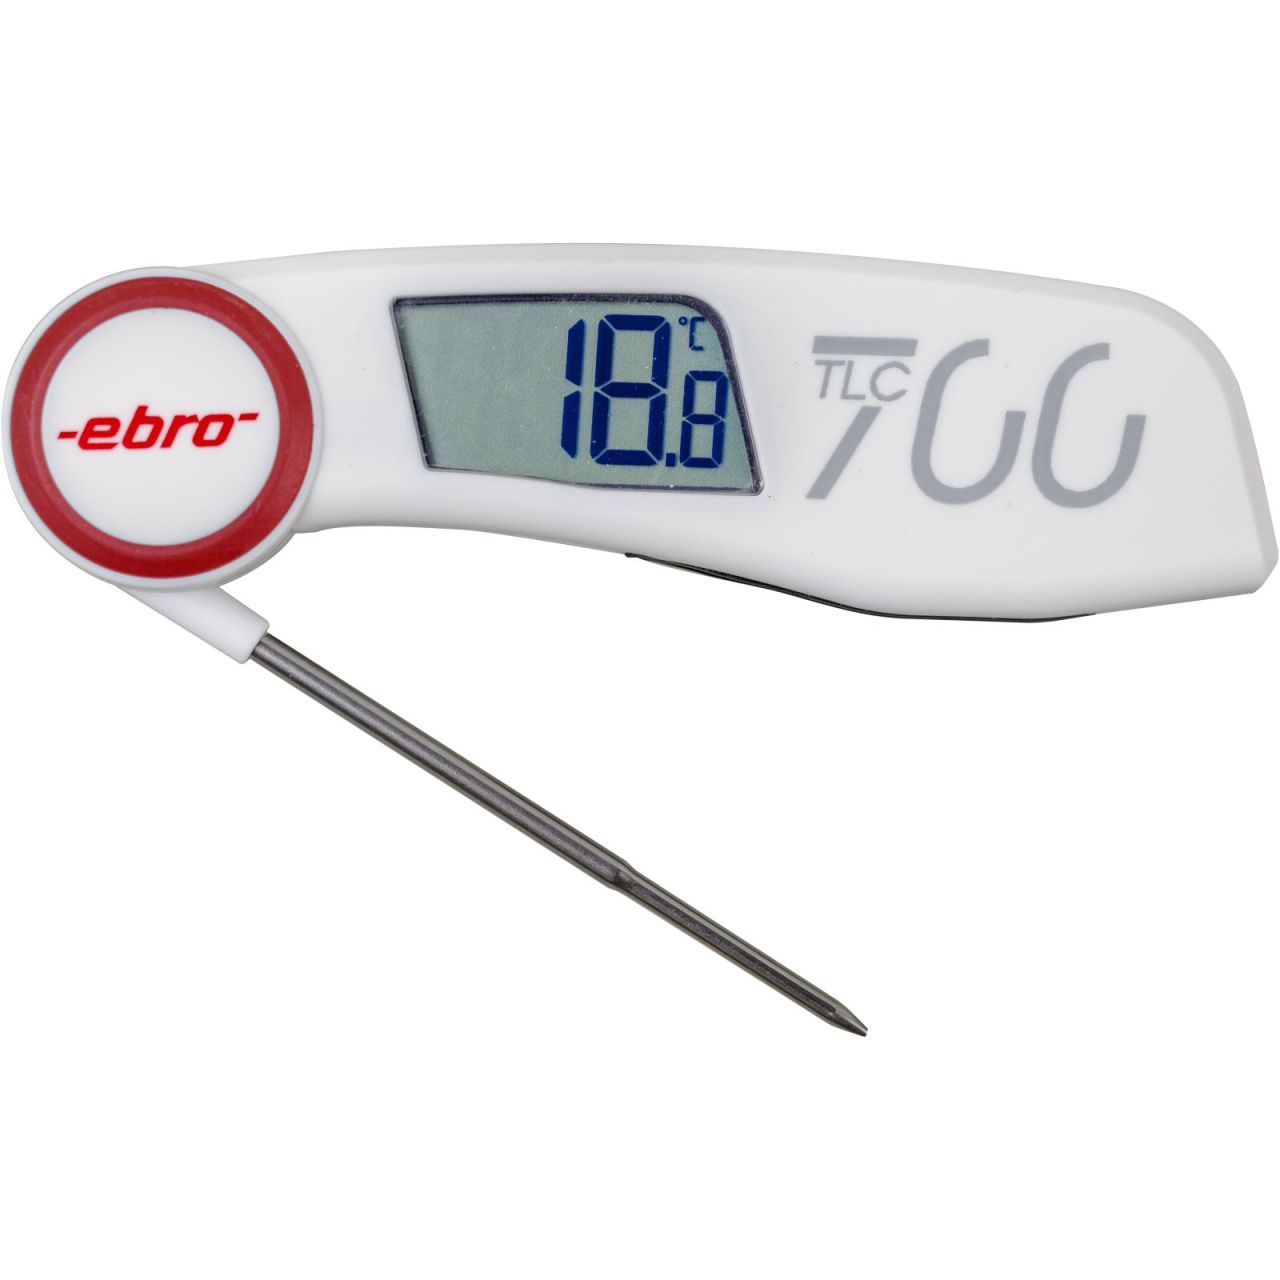 EBRO TLC 700 Katlanabilir Batırma Tip Termometre